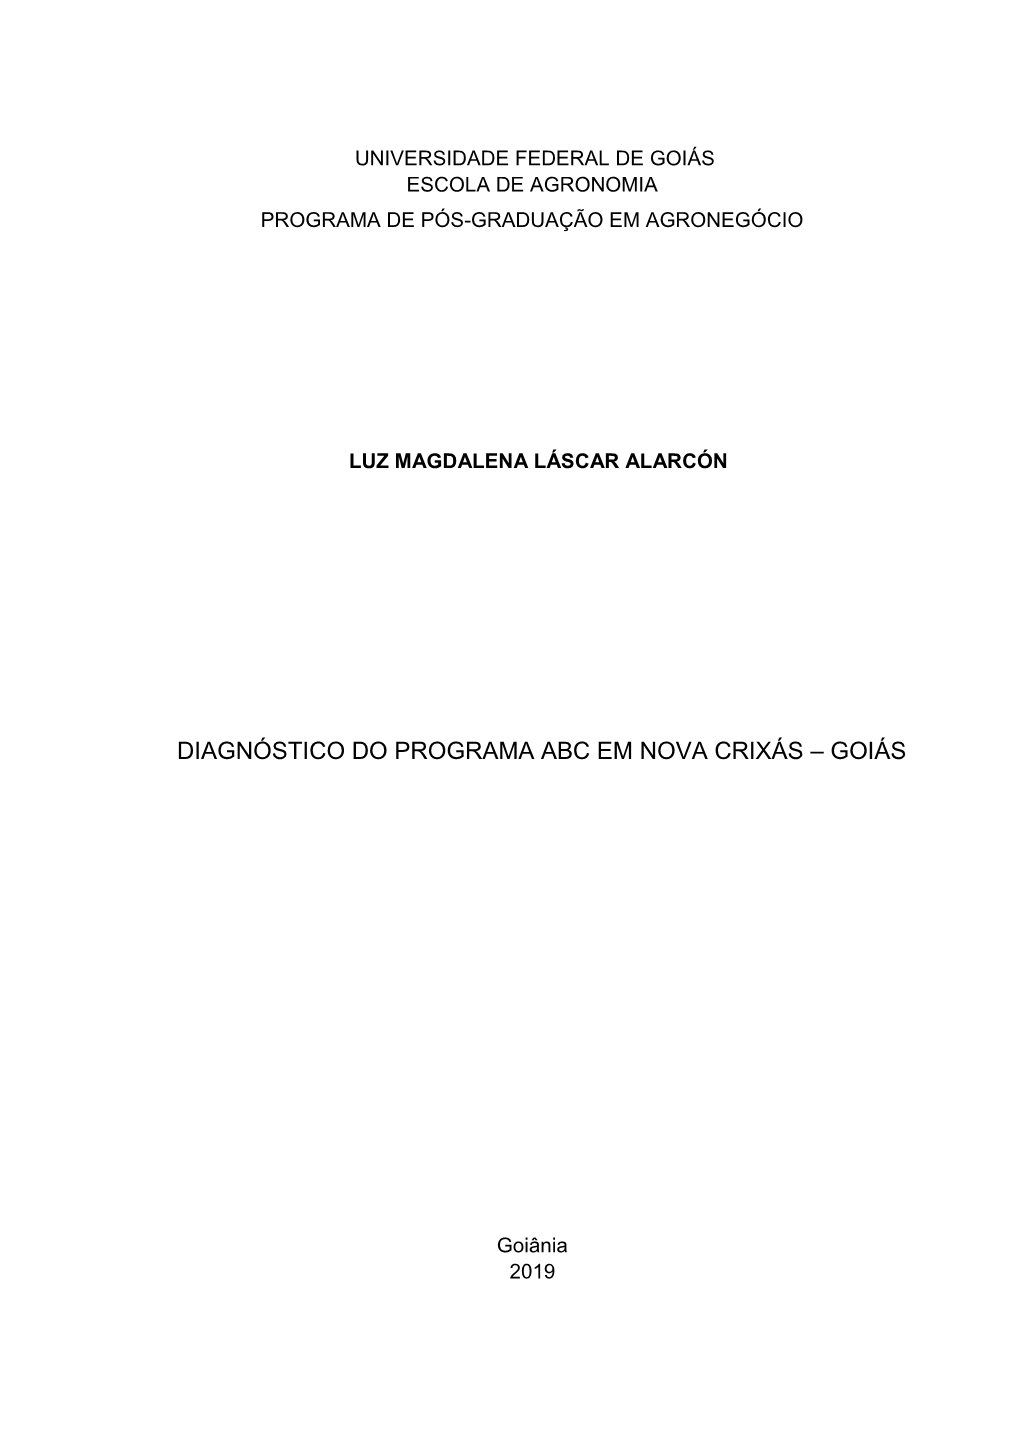 Diagnóstico Do Programa Abc Em Nova Crixás – Goiás